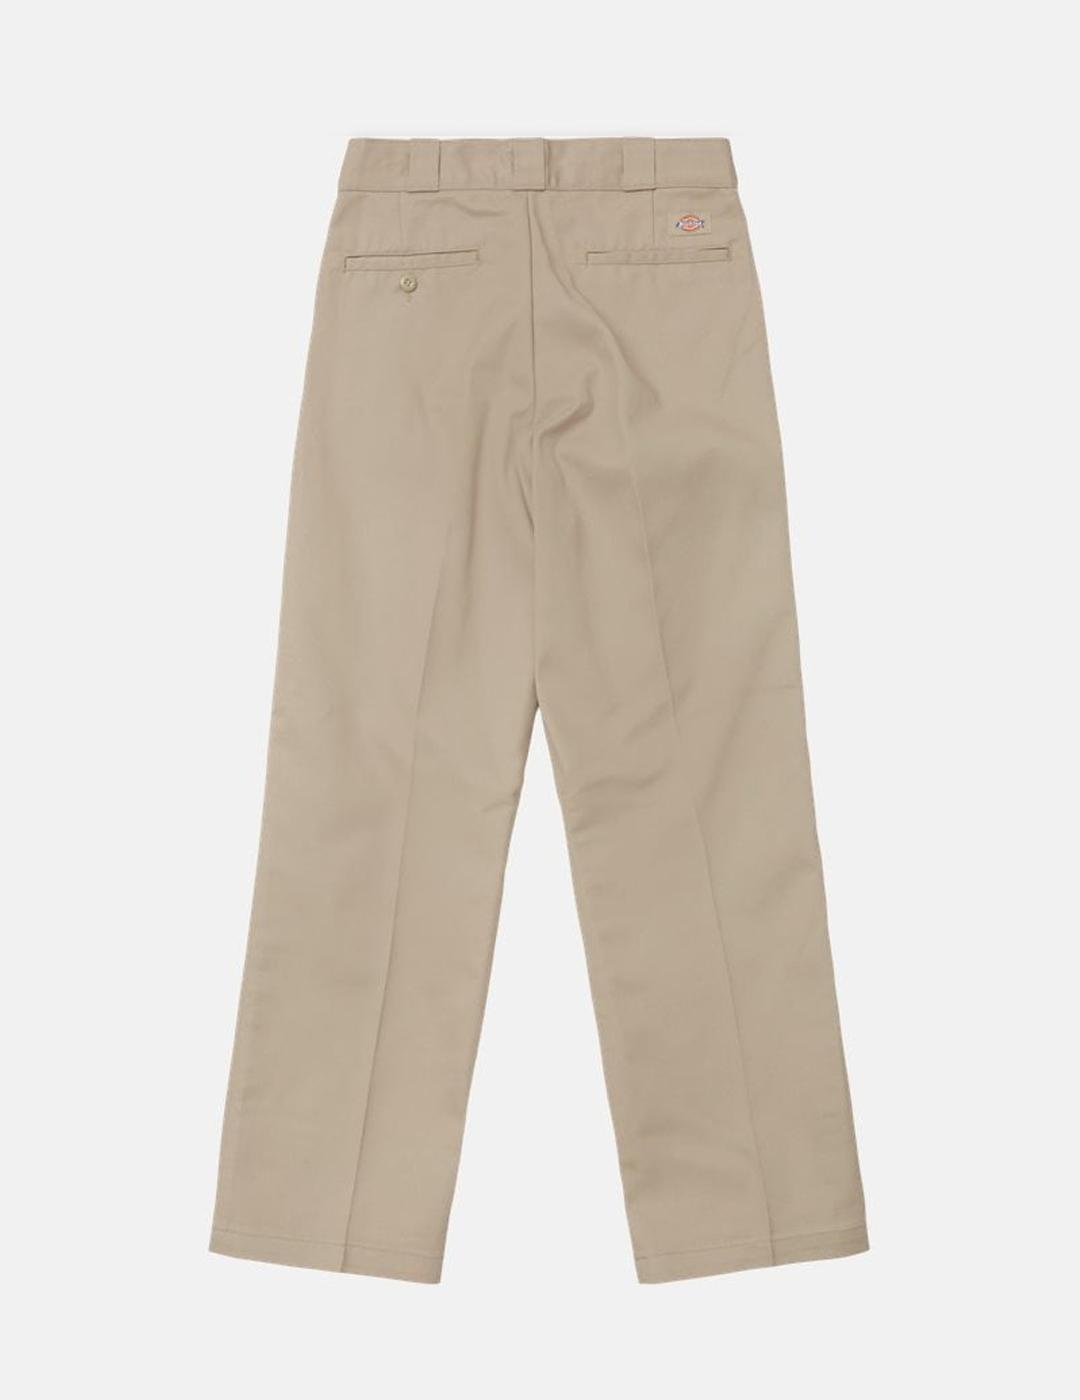 Pantalones Dickies 874 Original Fit